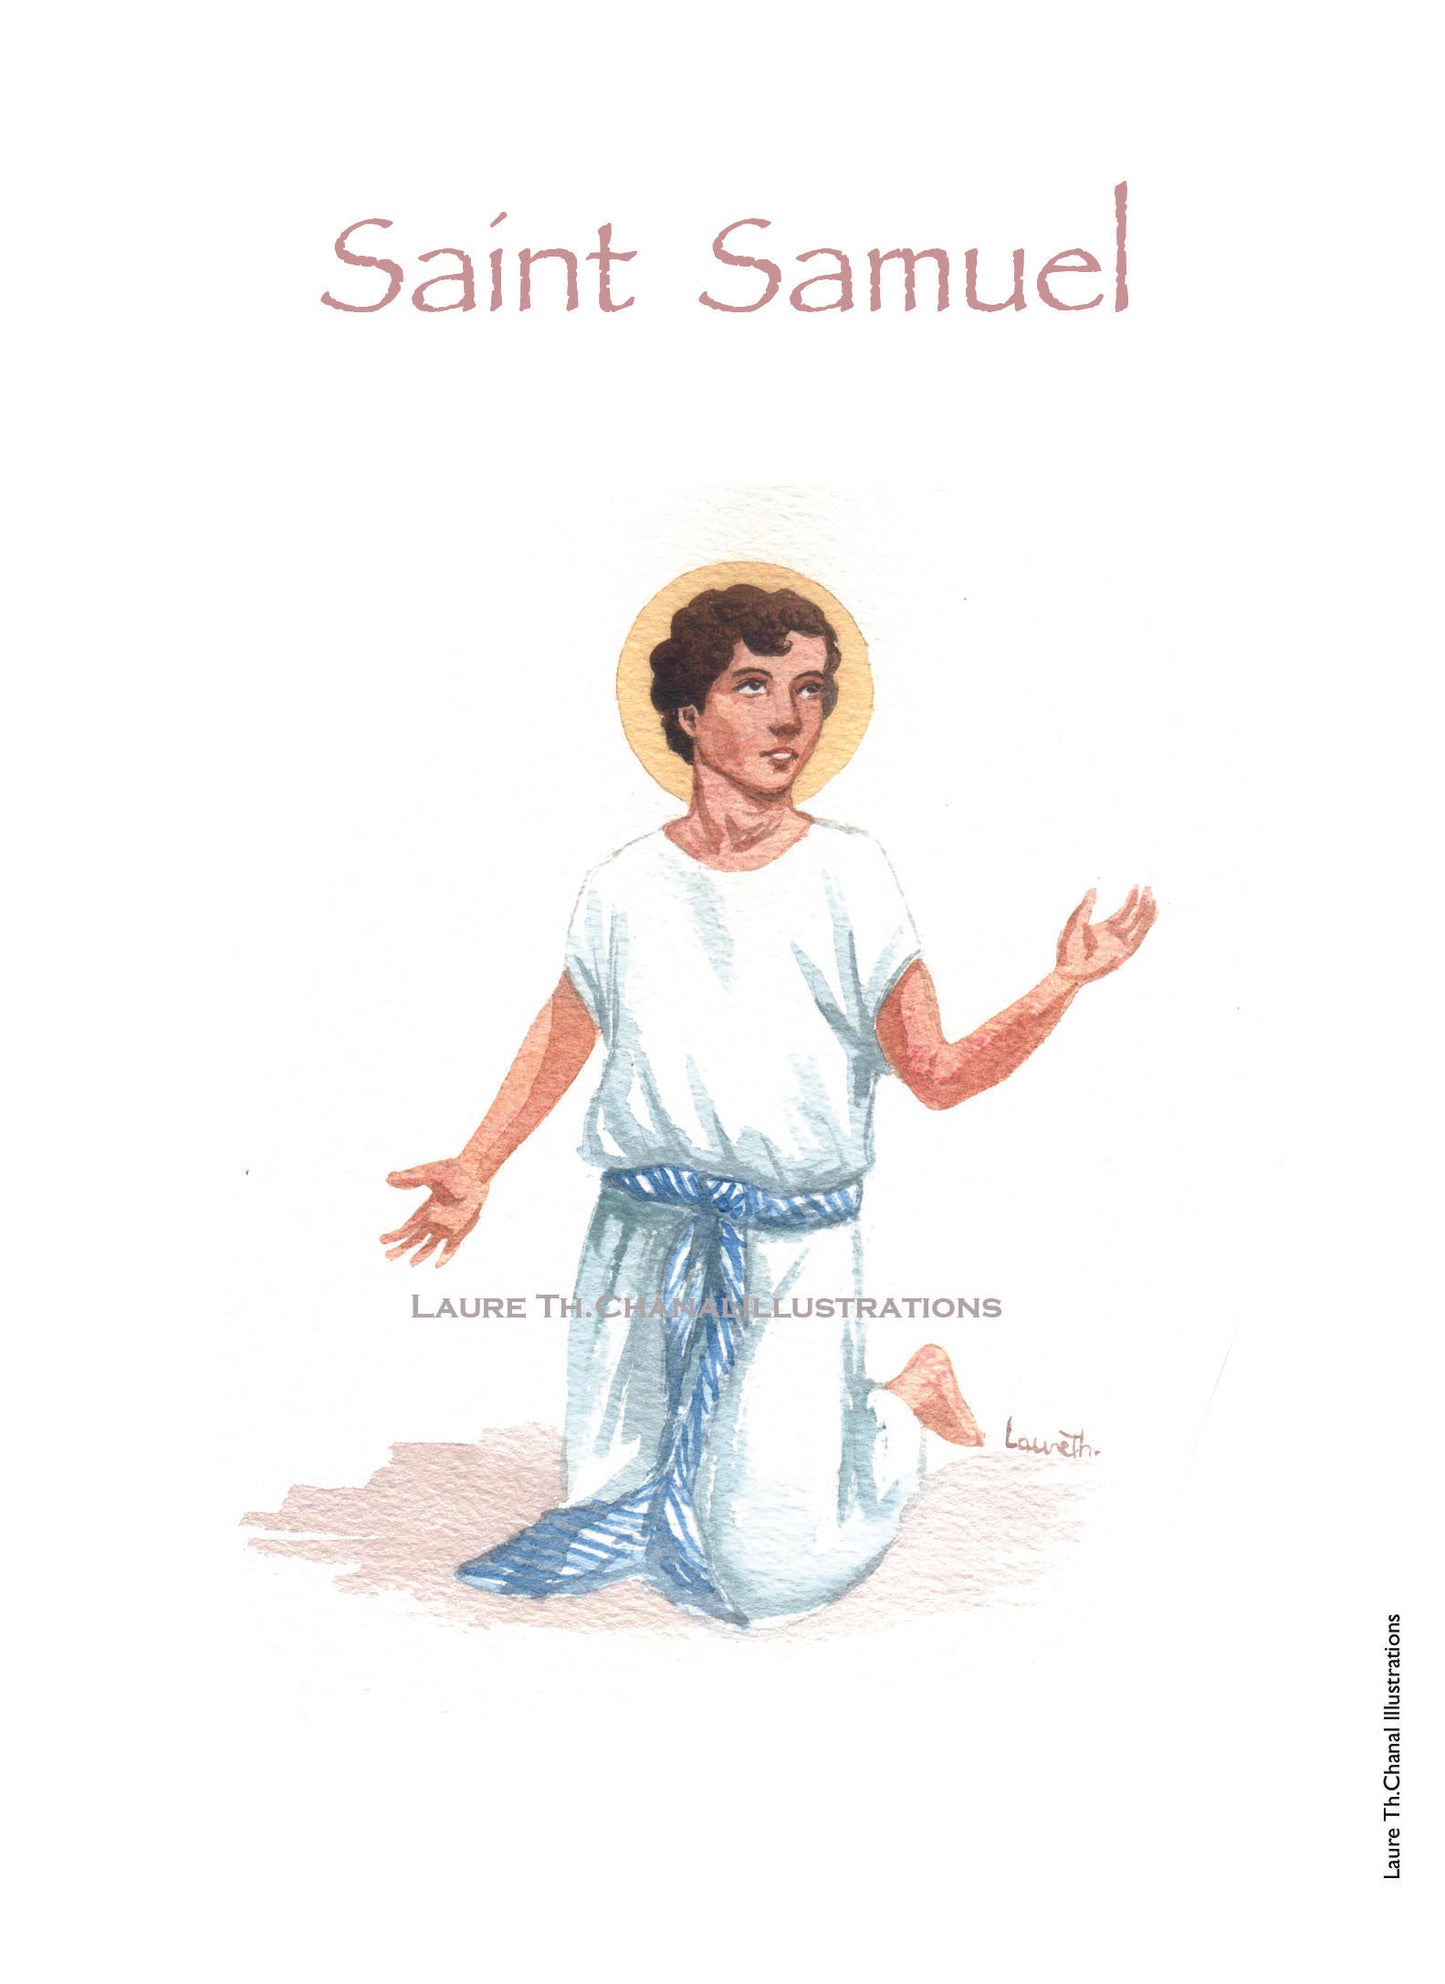 ;SAMUEL;ST SAMUEL;PATRON SAINTS / ST SAINTS CARDS;-;Active;5